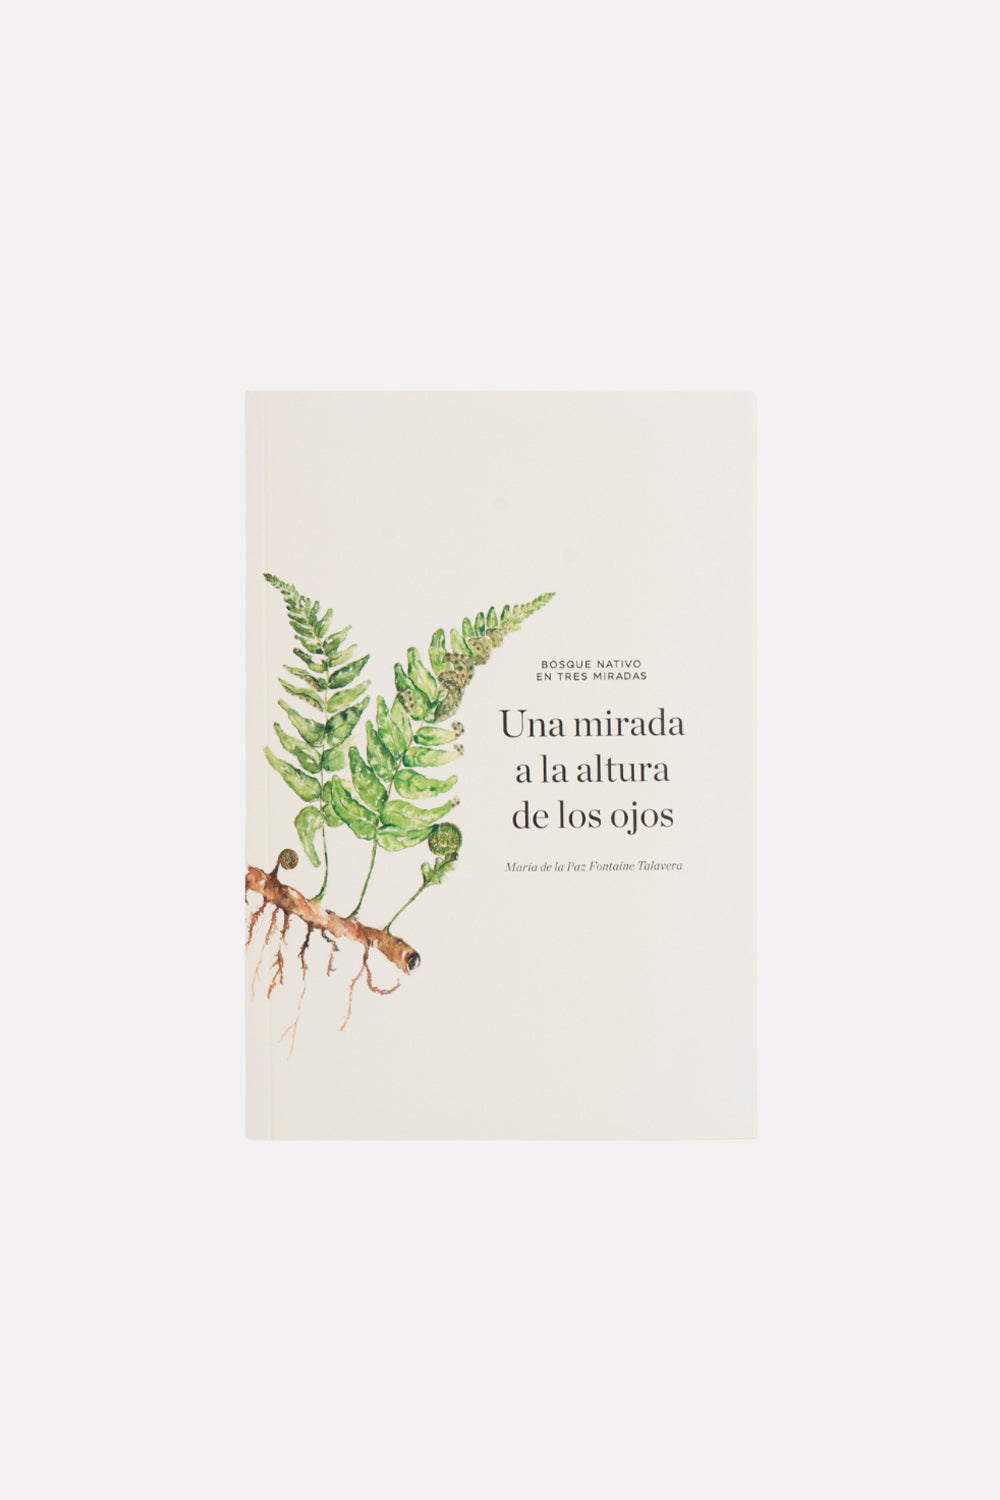 Libro "Bosque Nativo en Tres Miradas"